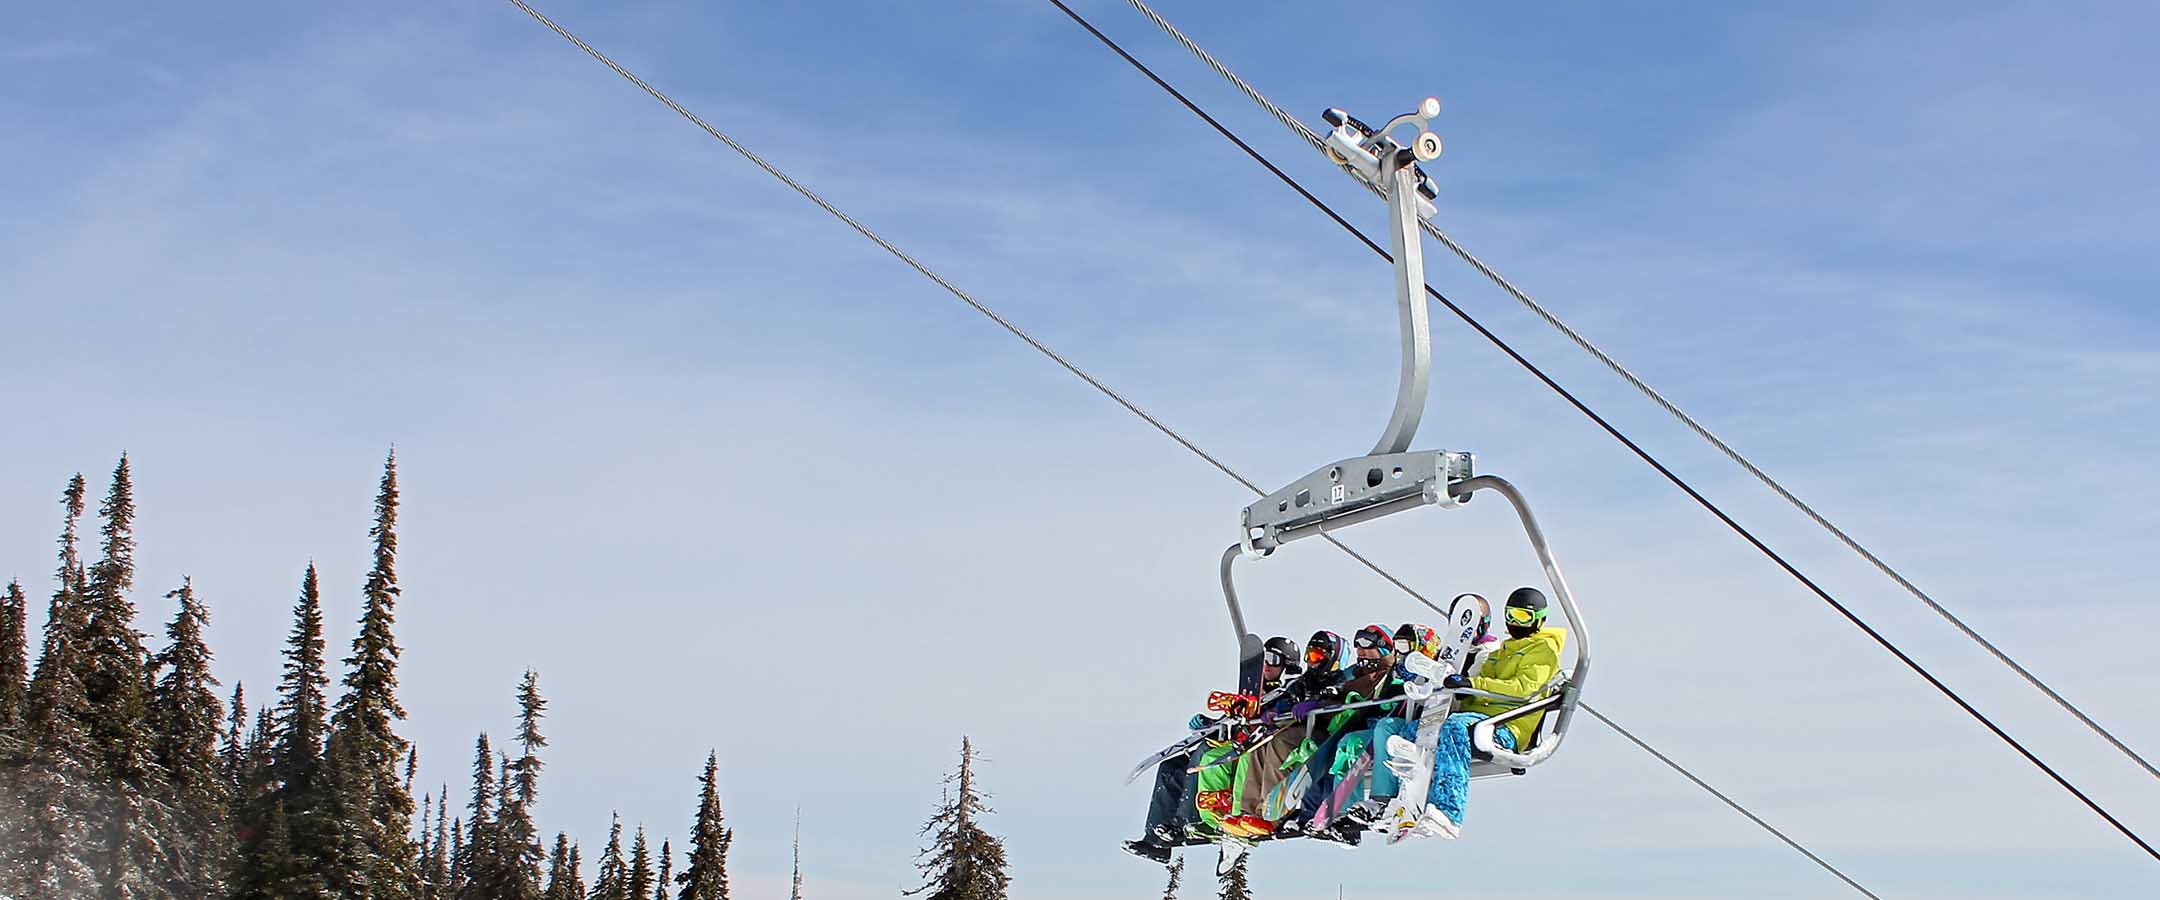 Ski chair lift